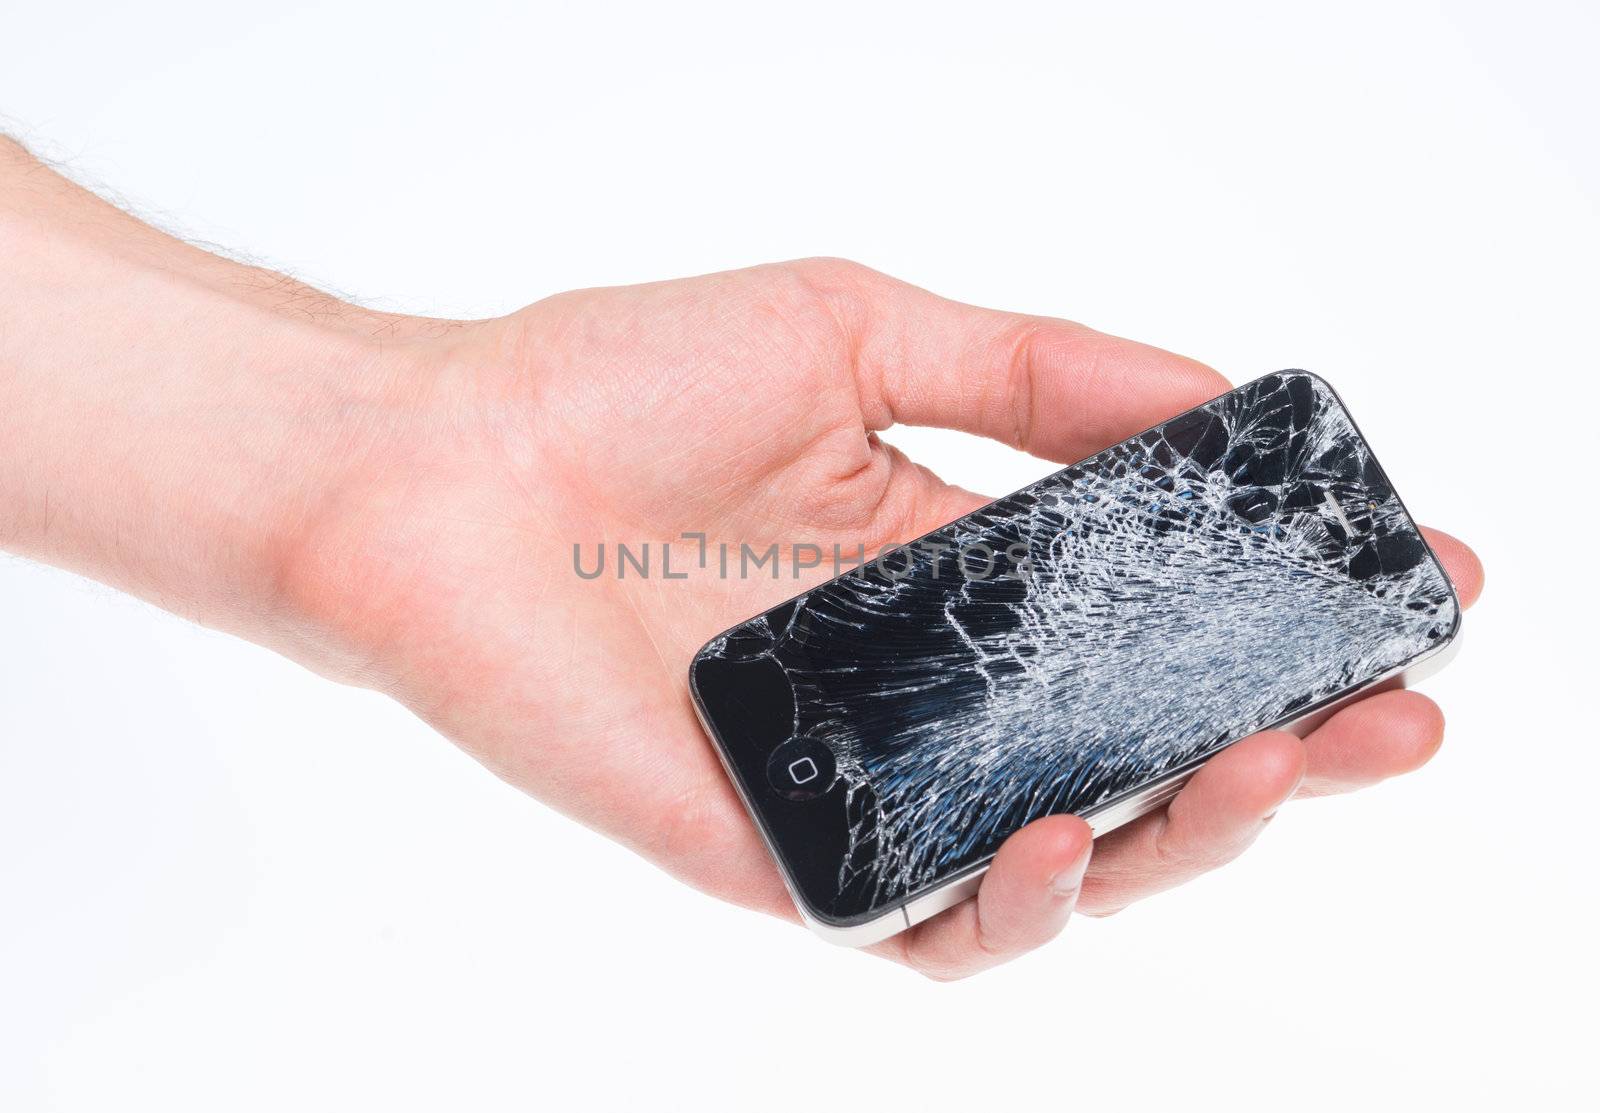 Broken Apple iPhone 4 in hand by bloomua